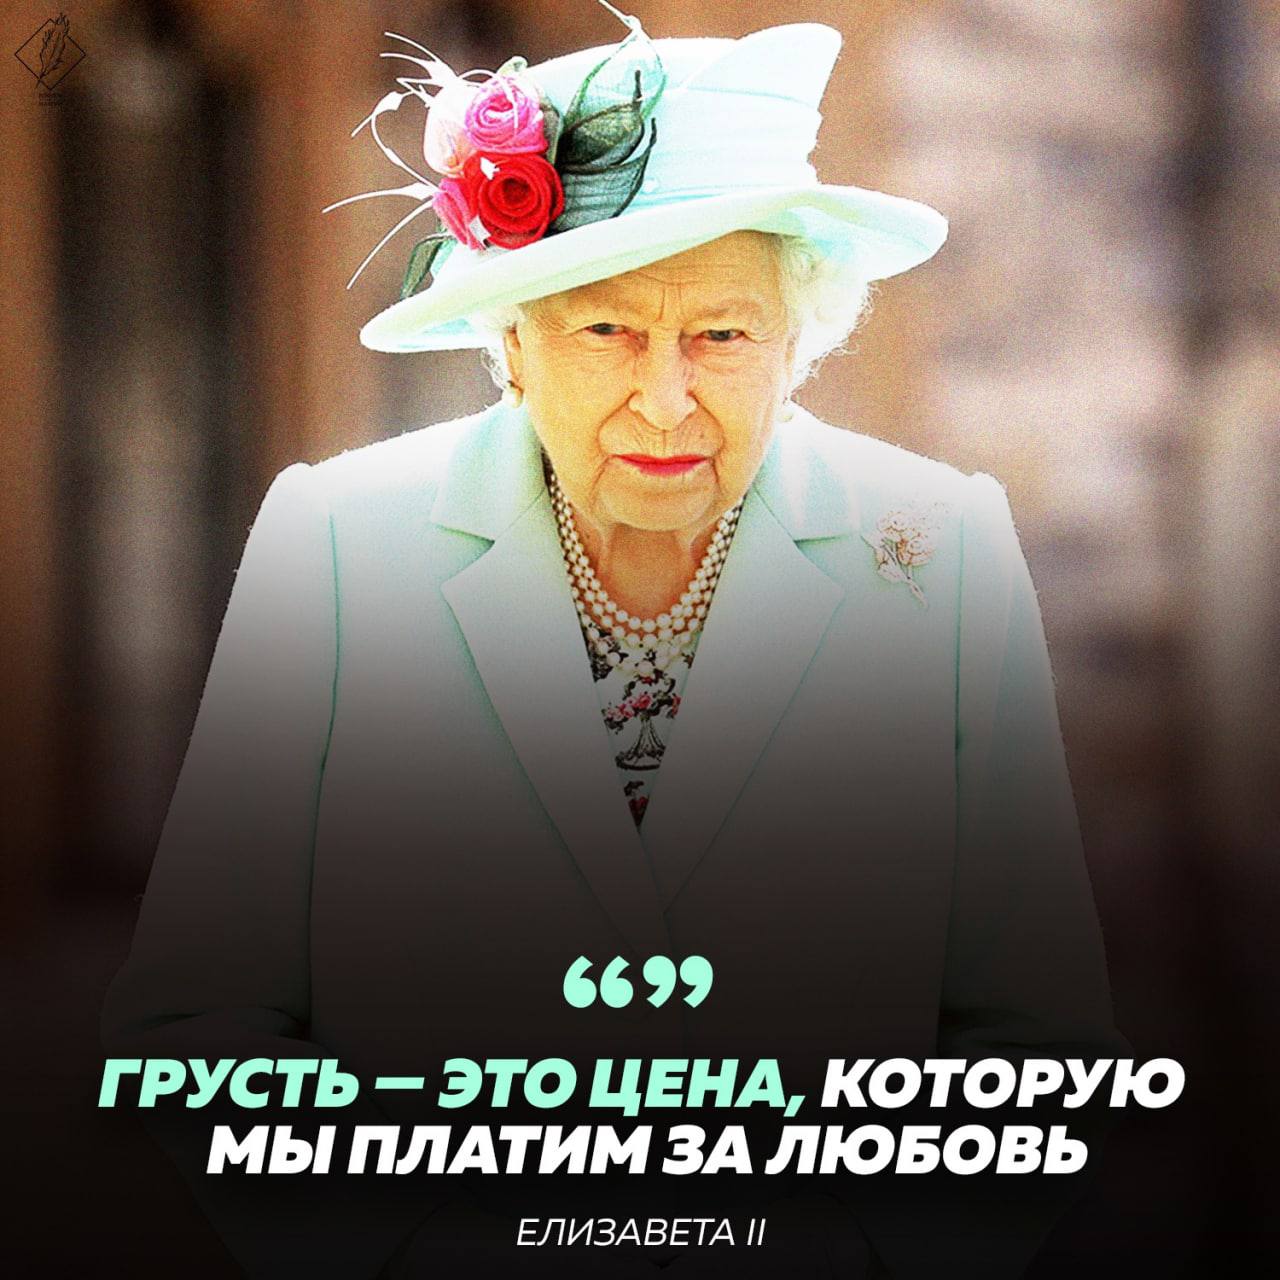 Мем про королеву Елизавету. Pavel_Gerz.